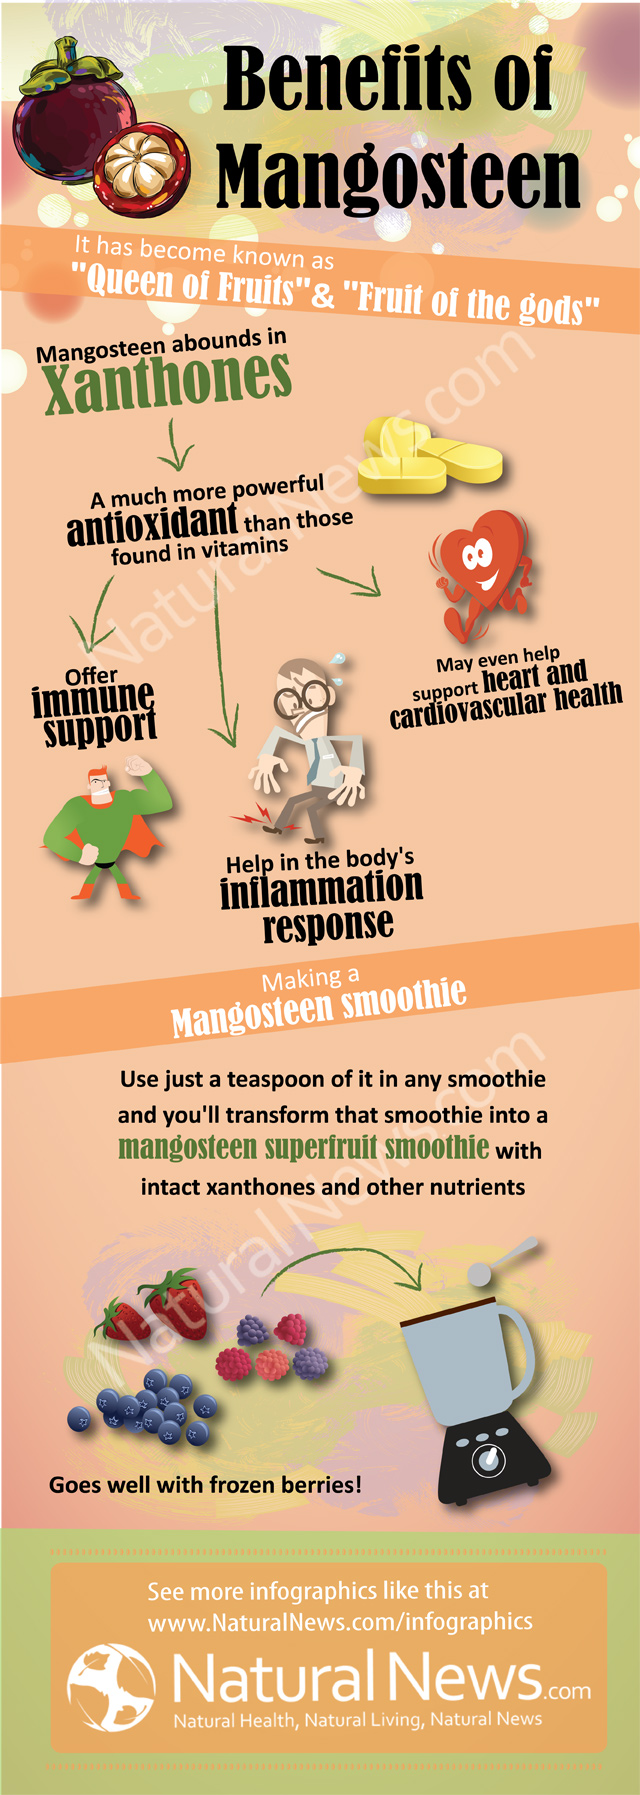 Benefits of Mangosteen